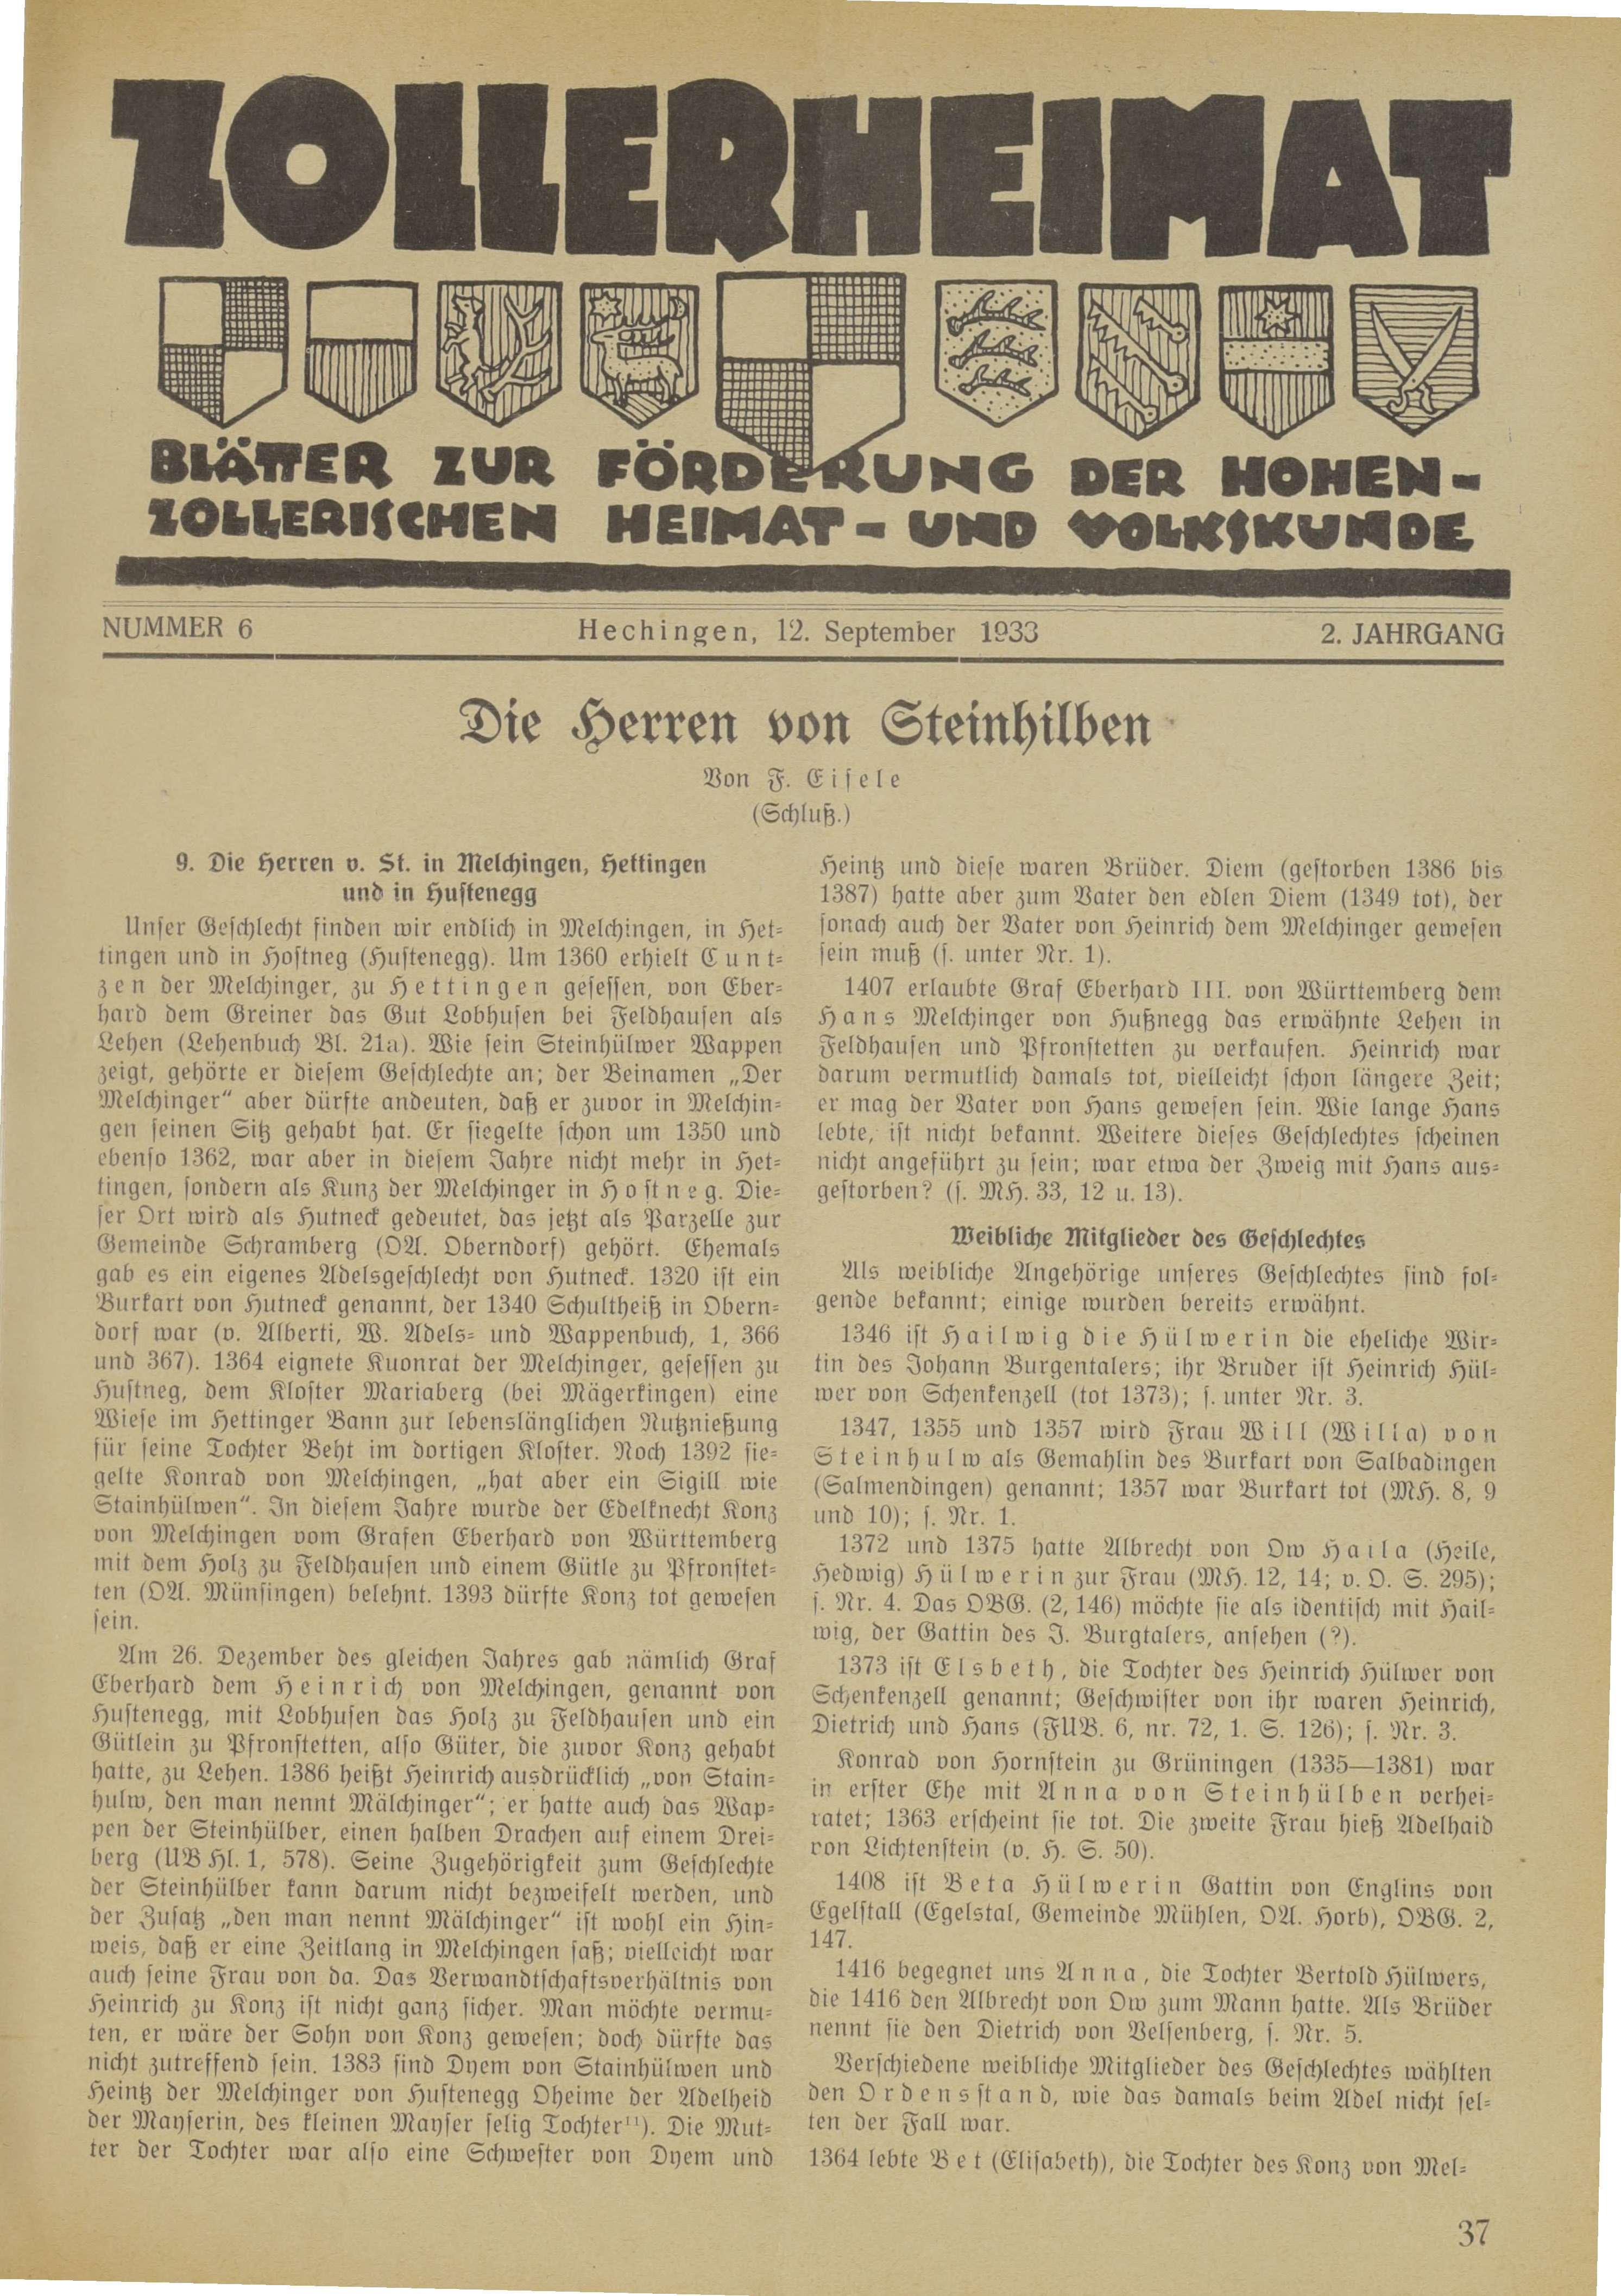                     Ansehen Bd. 2 Nr. 6 (1933): Zollerheimat
                